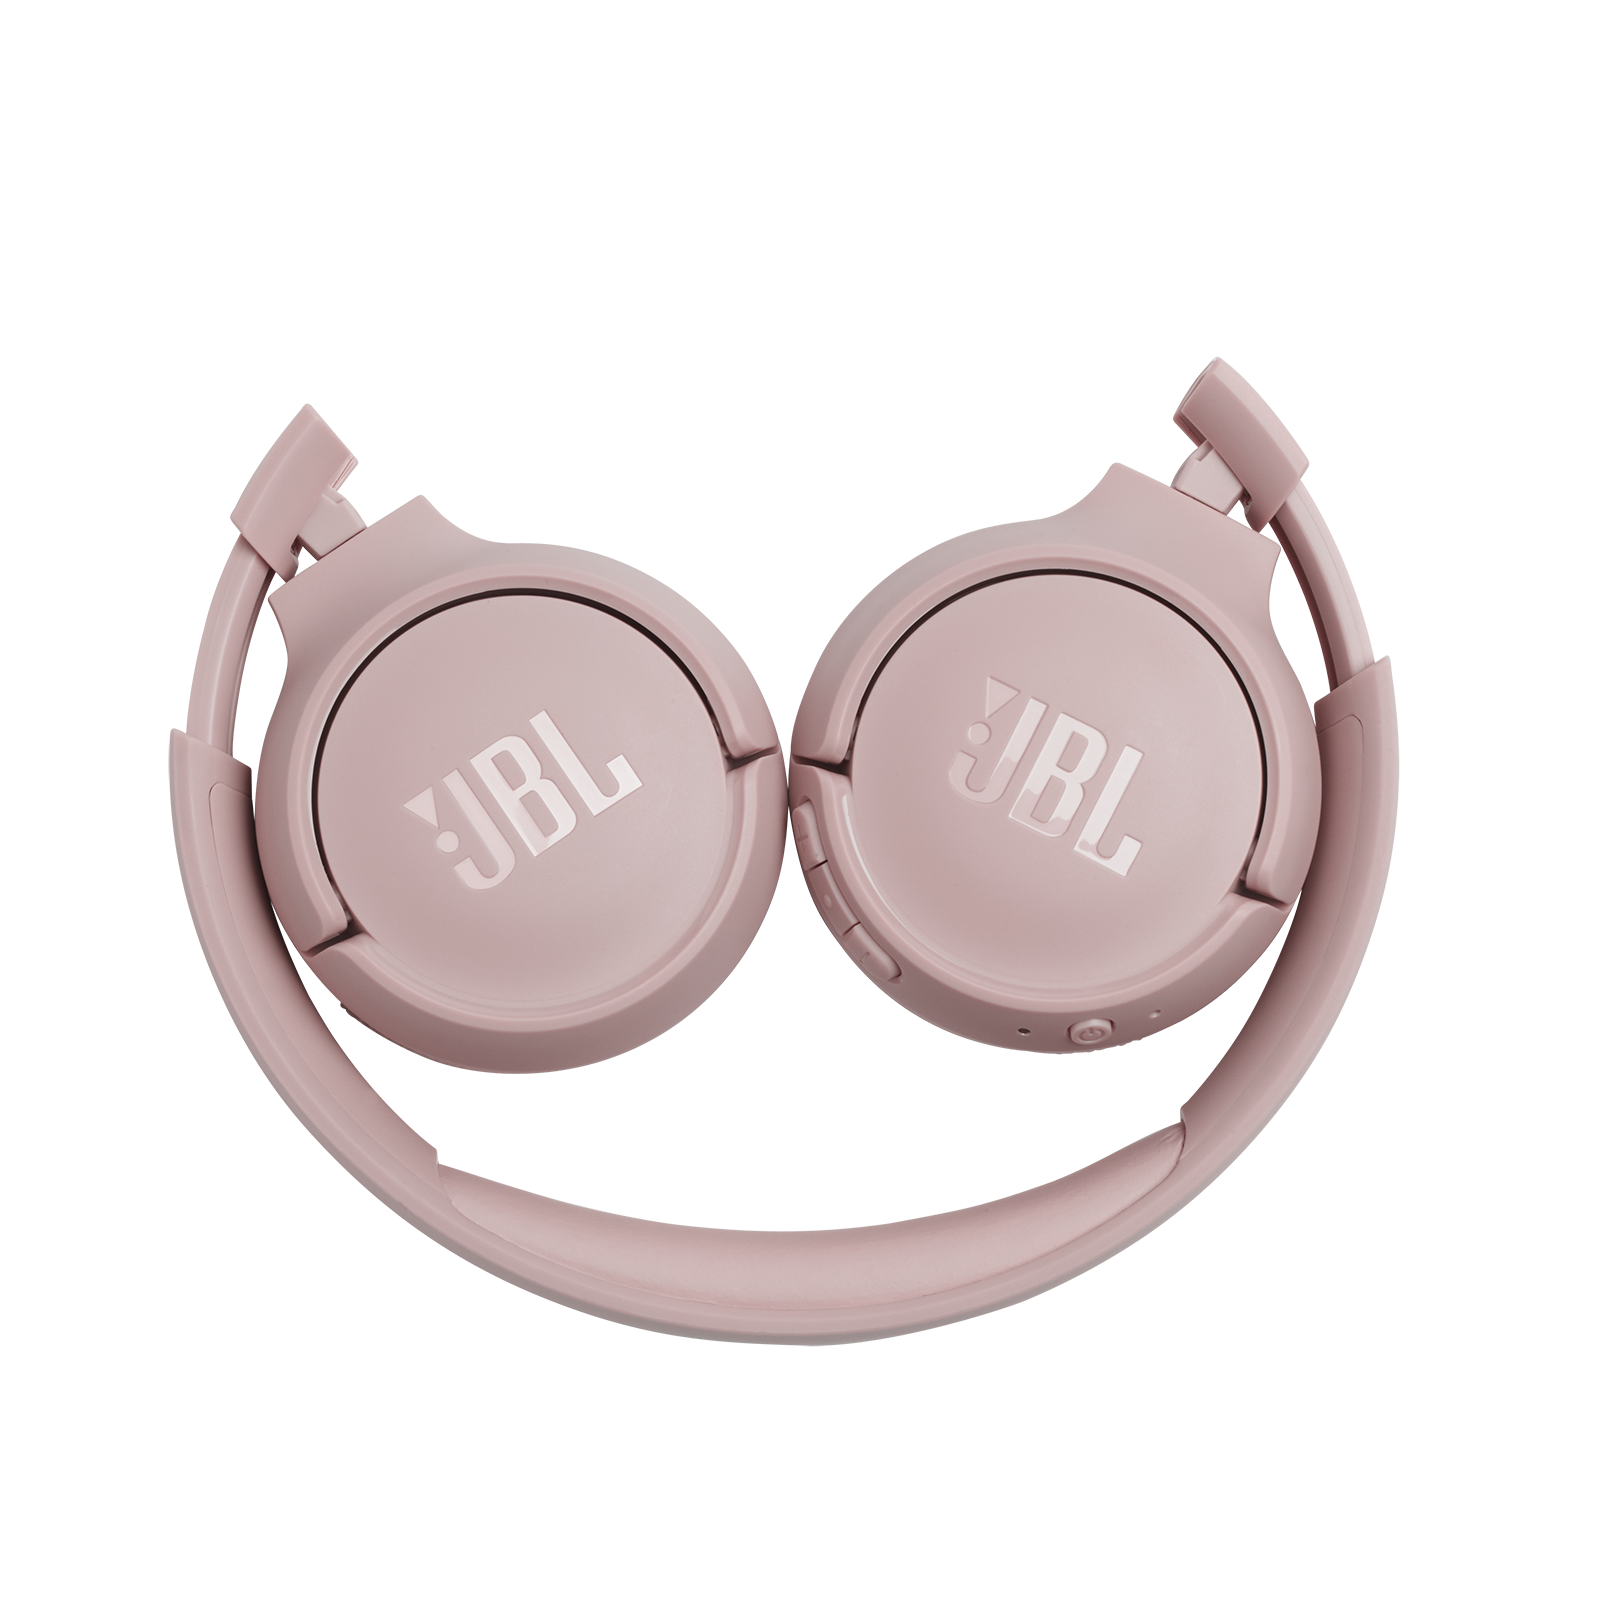 JBL Tune 500BT - Pink - Wireless on-ear headphones - Detailshot 2